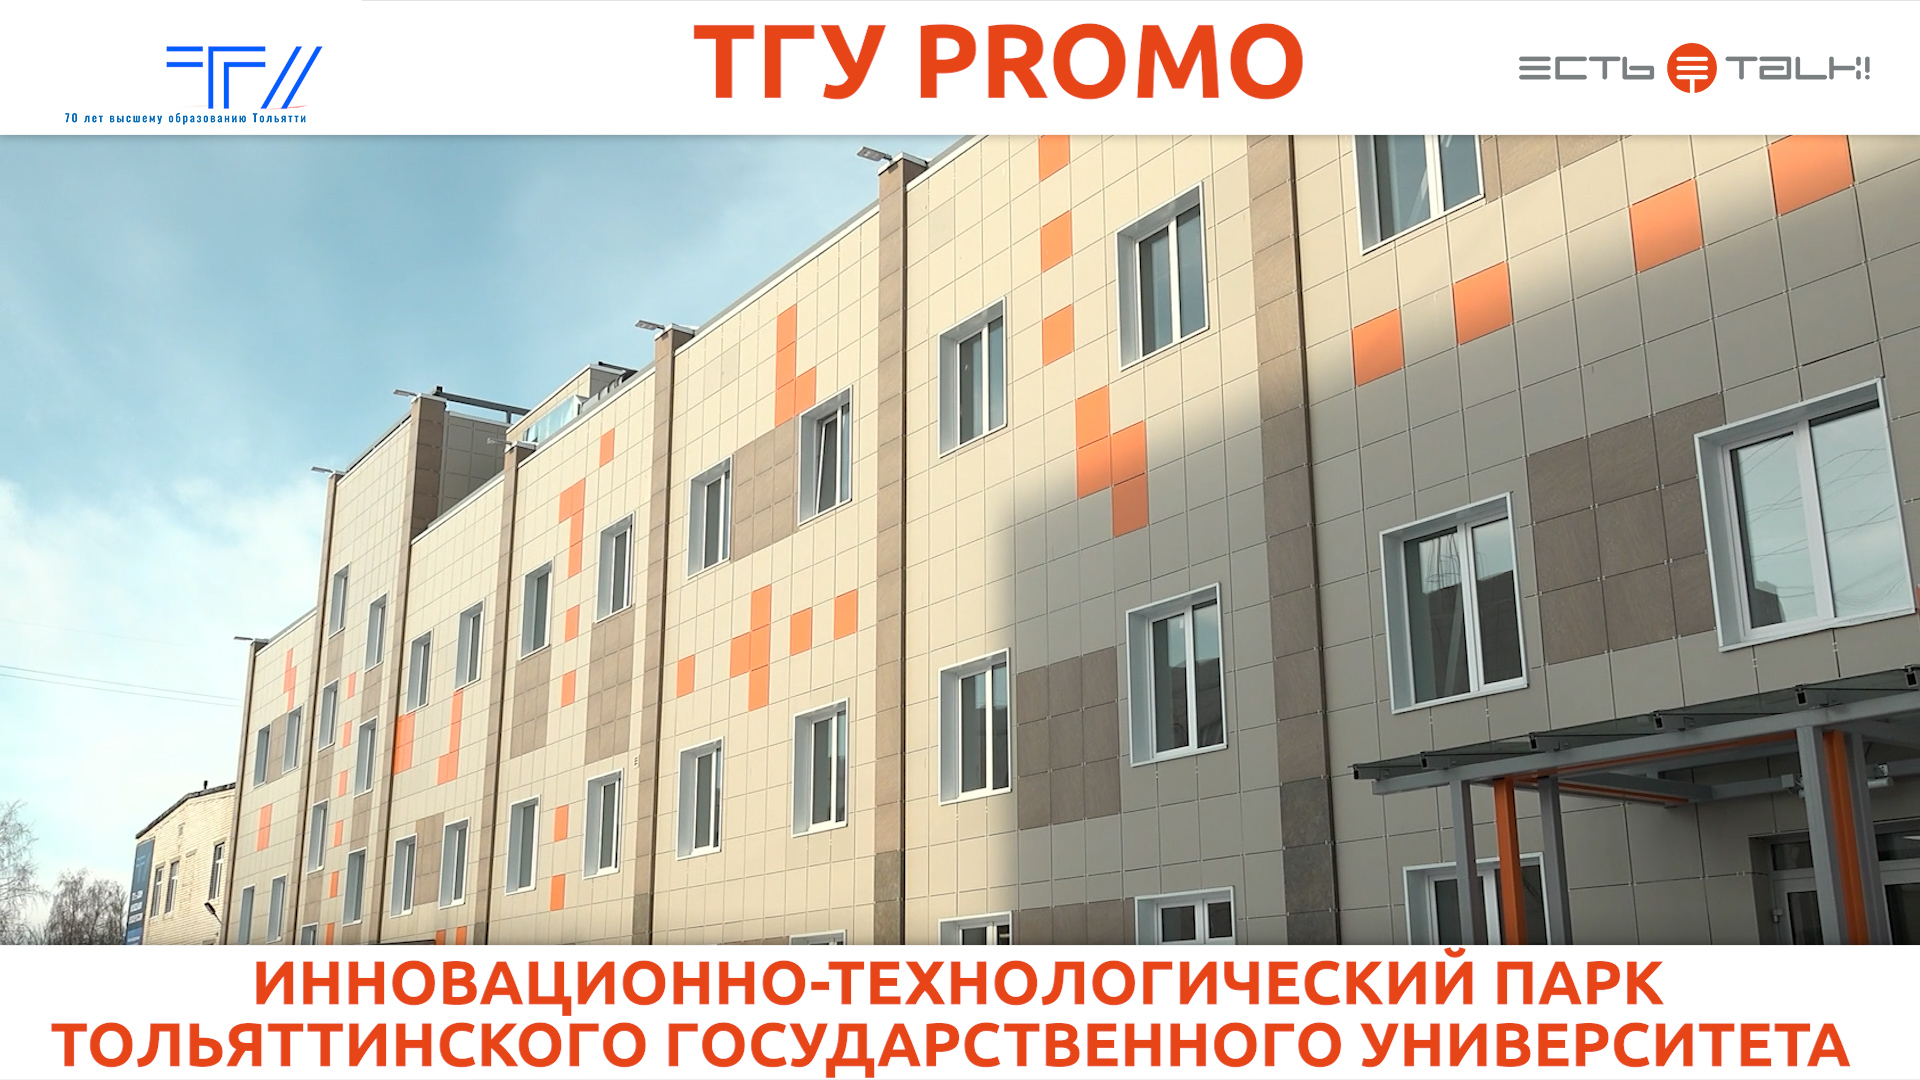 ТГУ Promo: Инновационно-технологический парк Тольяттинского государственного университета